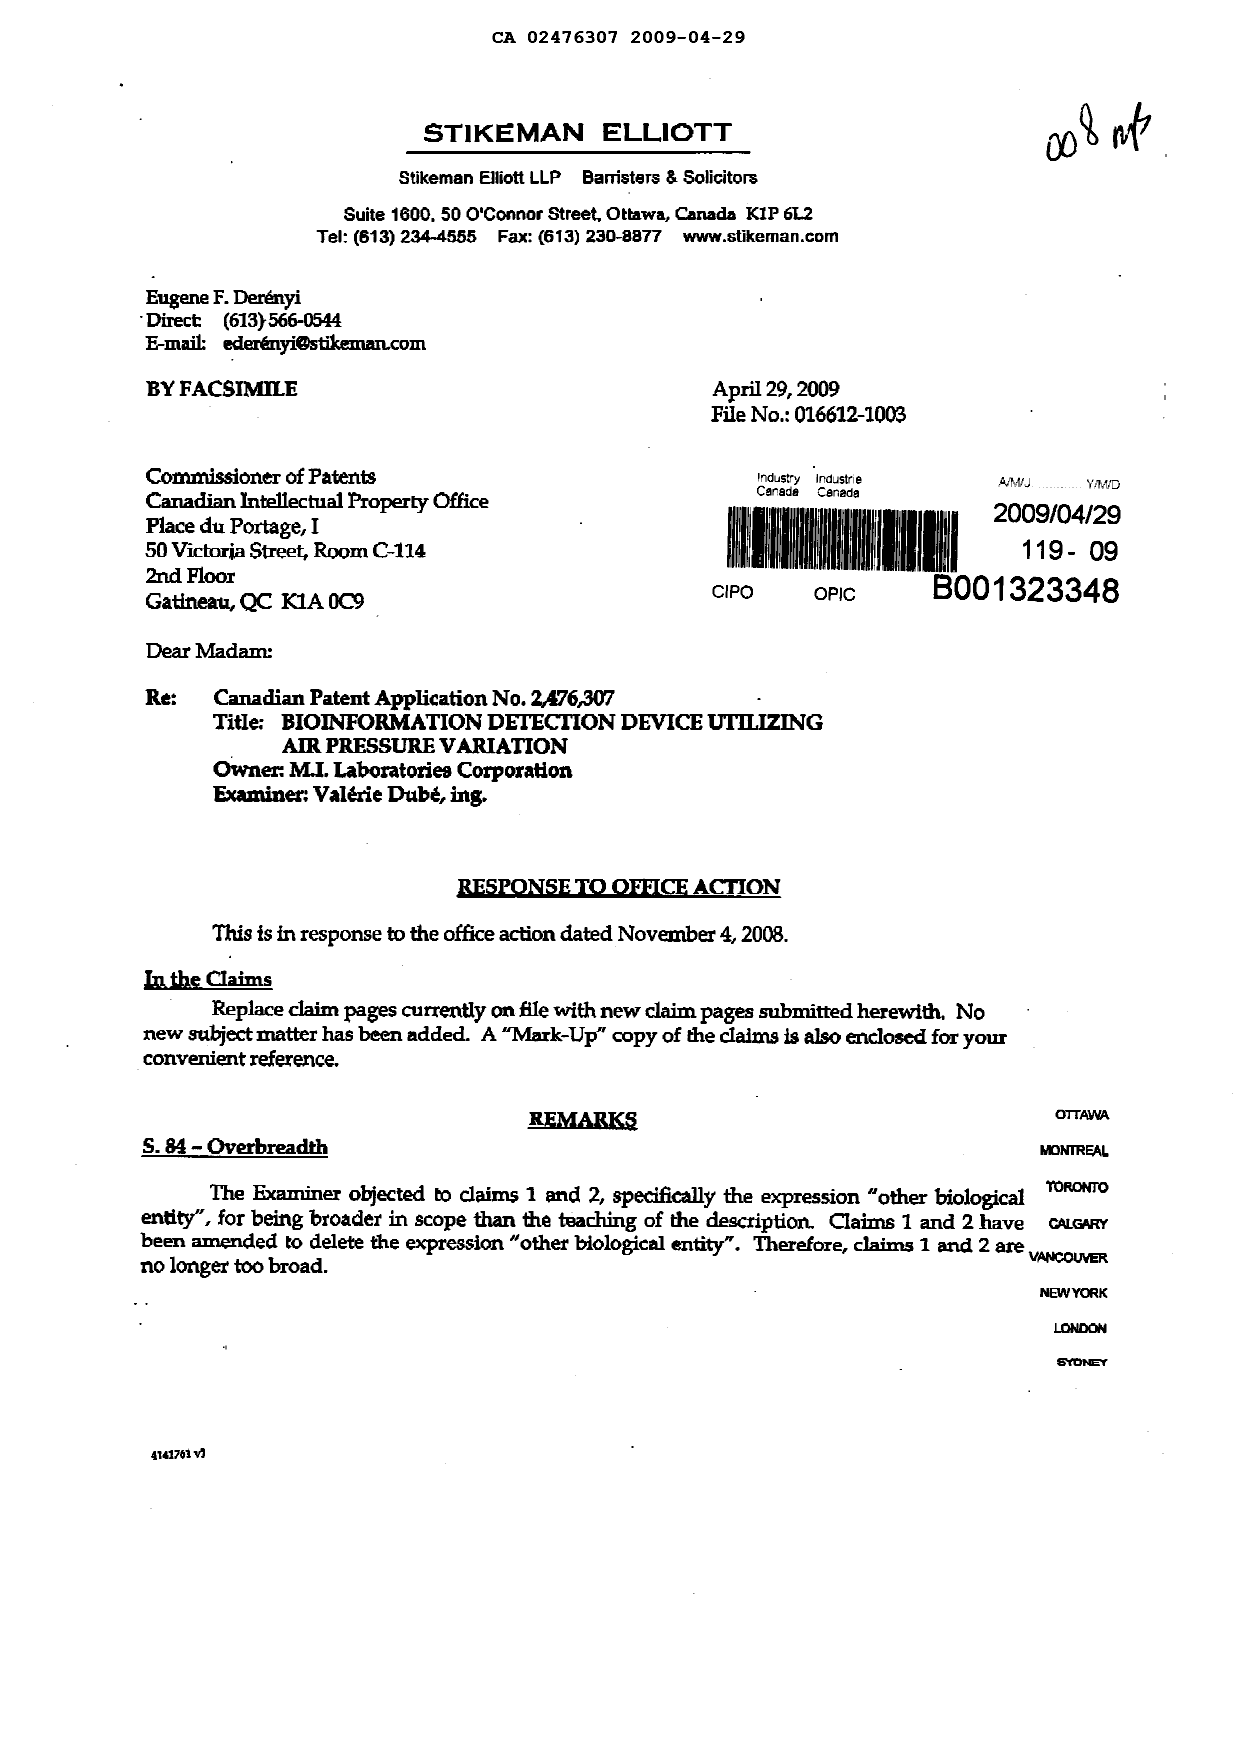 Document de brevet canadien 2476307. Poursuite-Amendment 20090429. Image 1 de 6